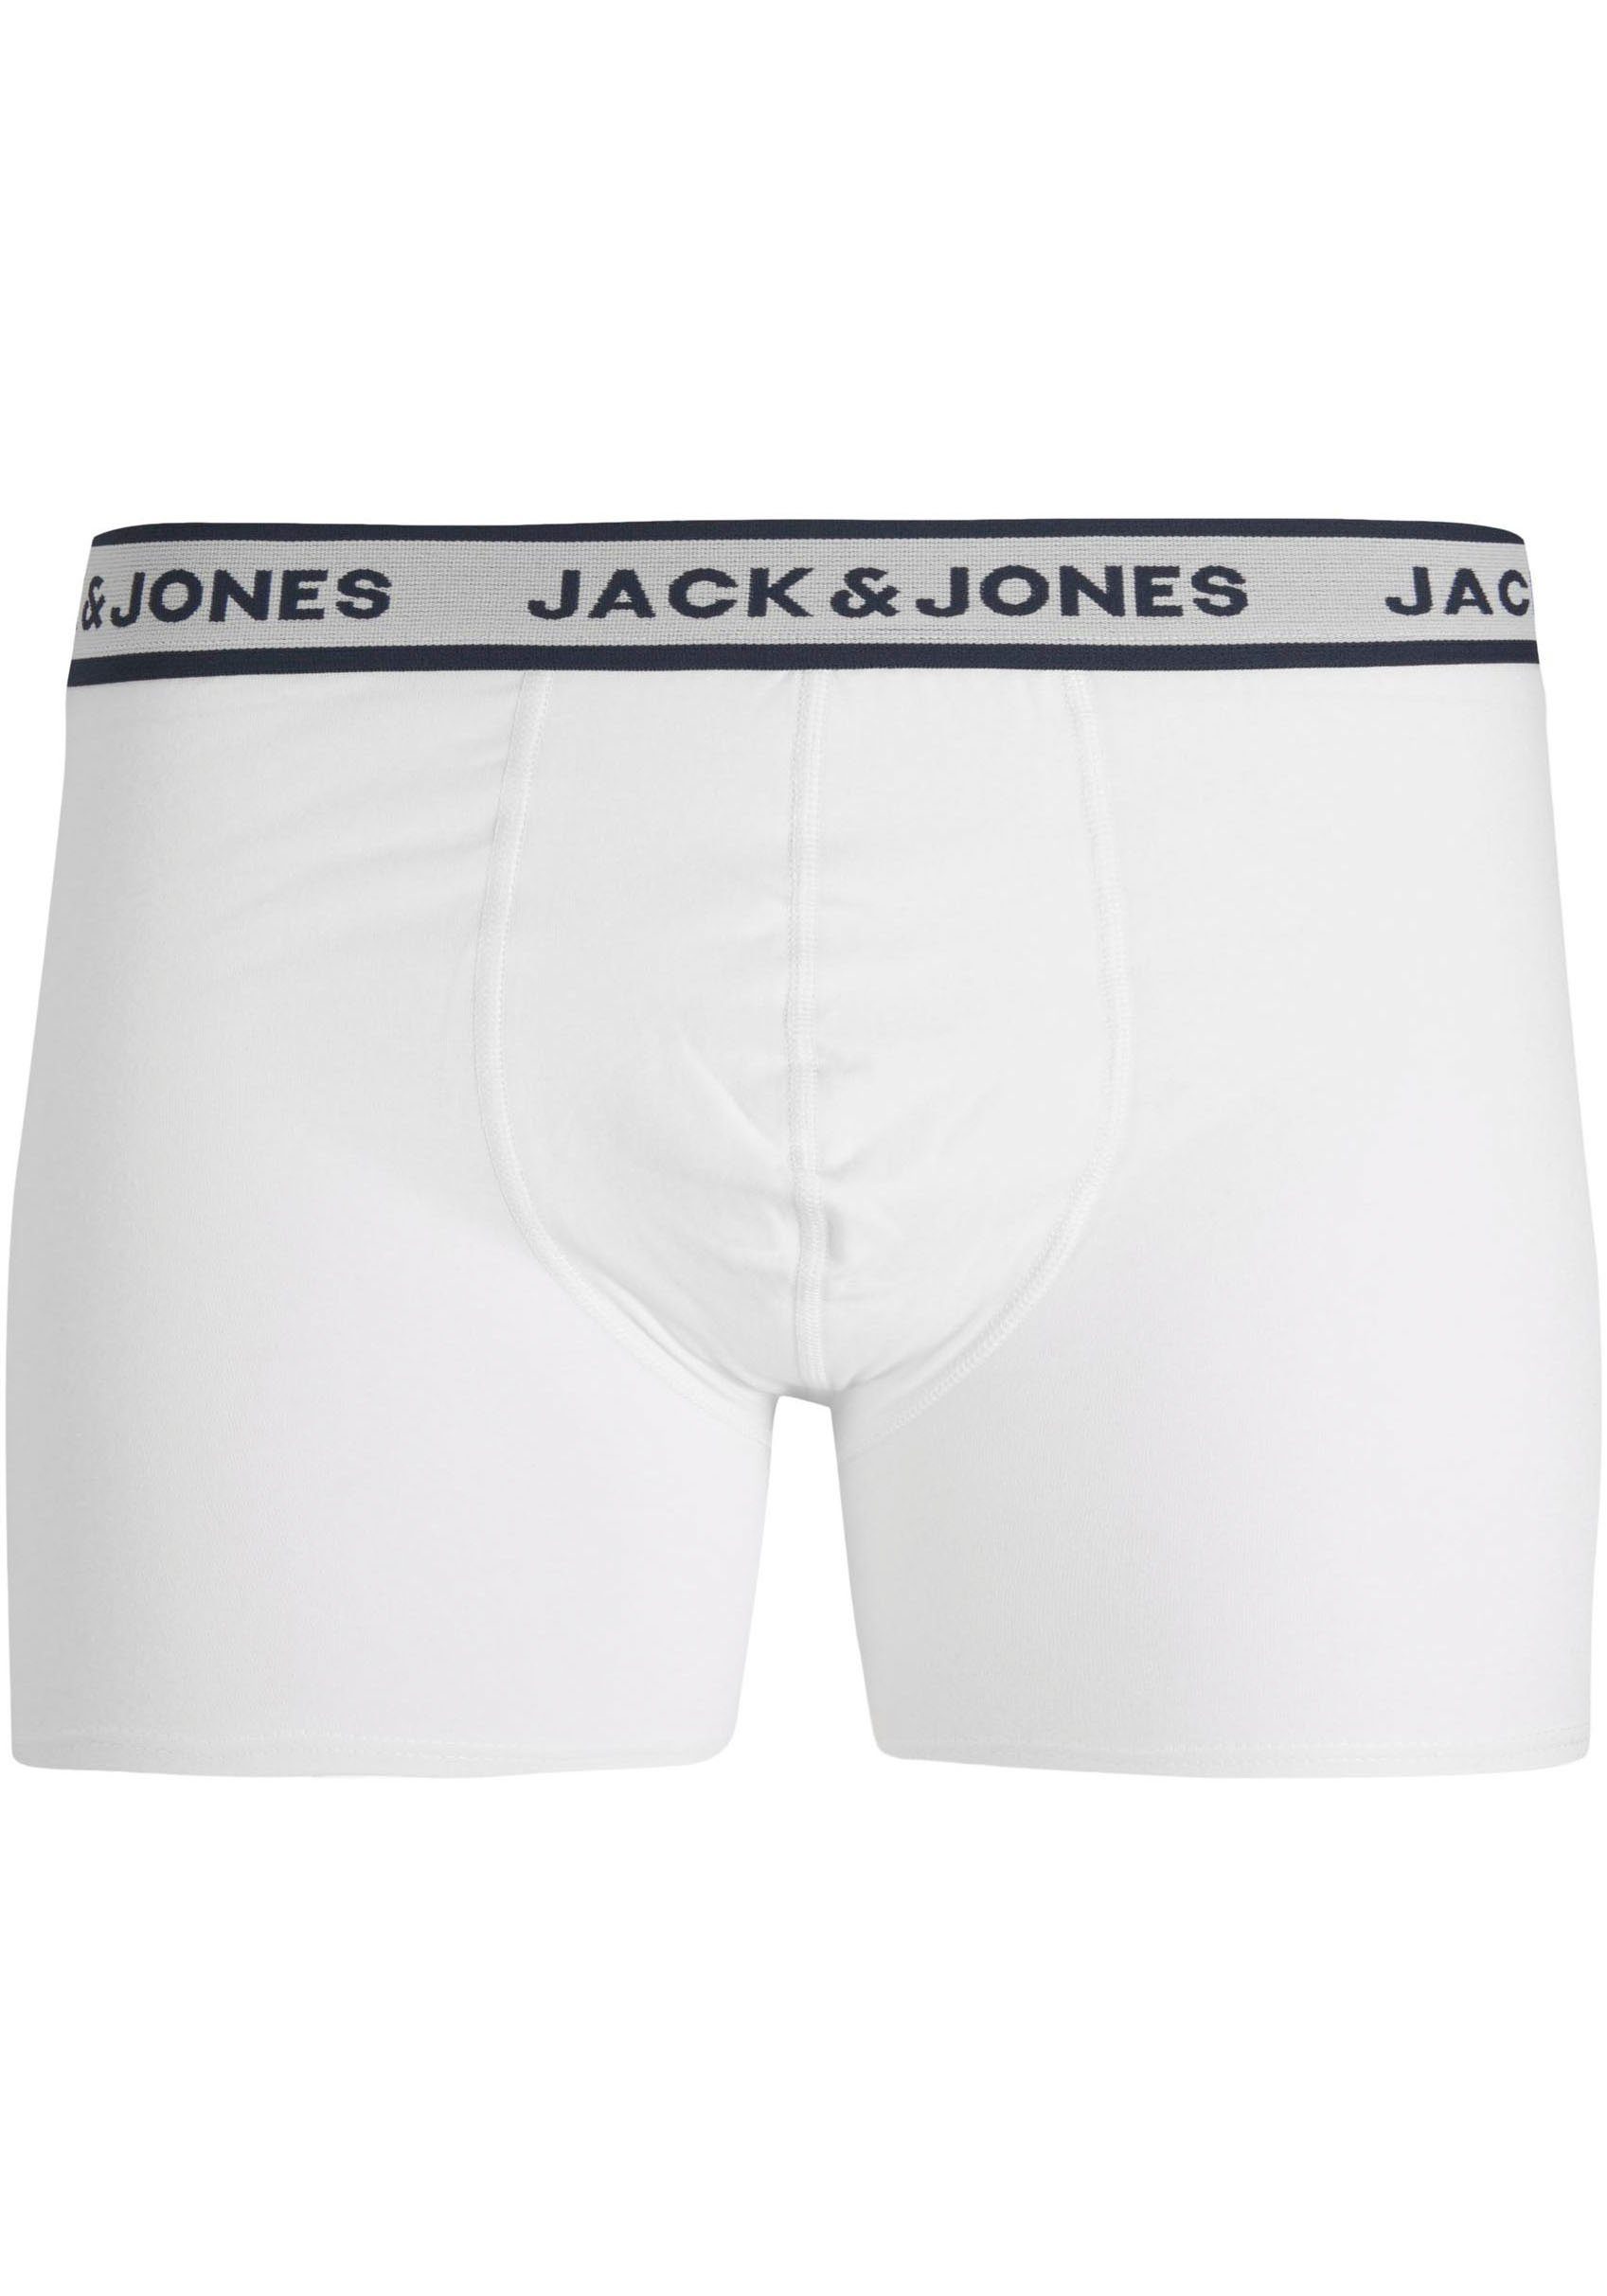 Jack & Jones Boxershorts JACSOLID Grey BRIEFS Melange 3-St) PACK 3 Light BOXER NOOS (Packung